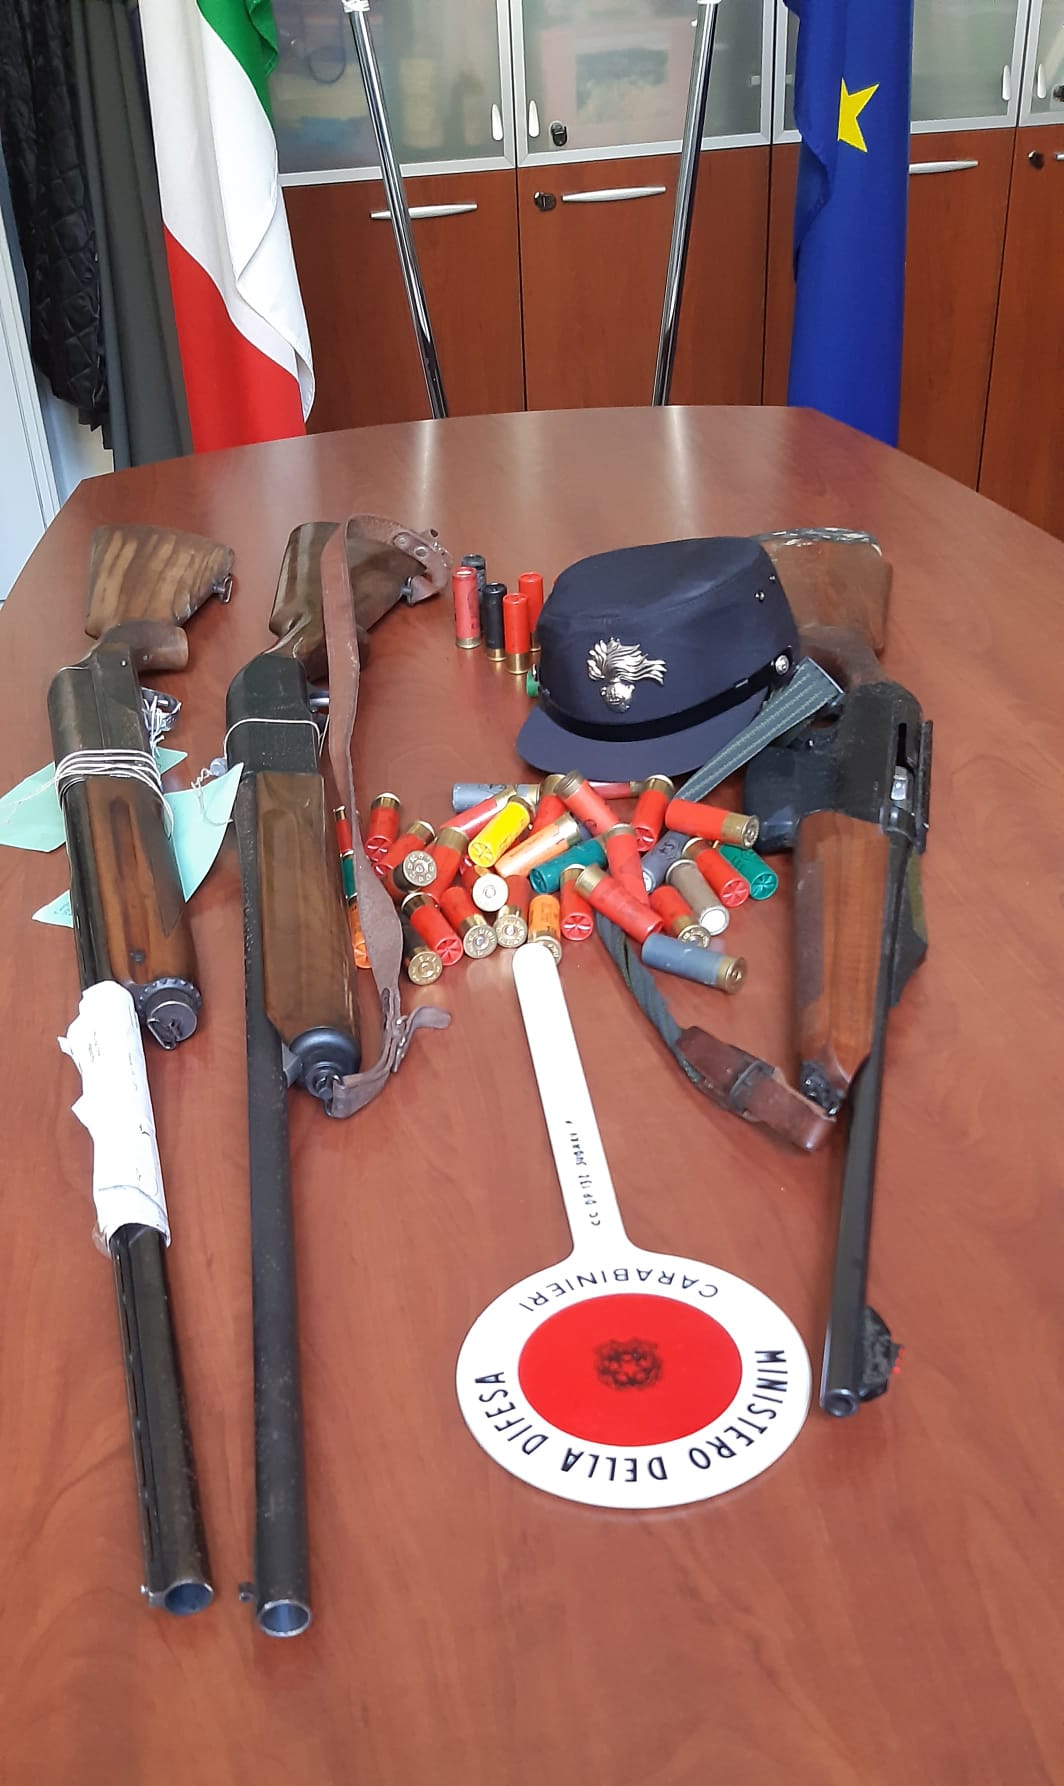 le arm in violazione della normativa (Fonte foto Carabinieri)